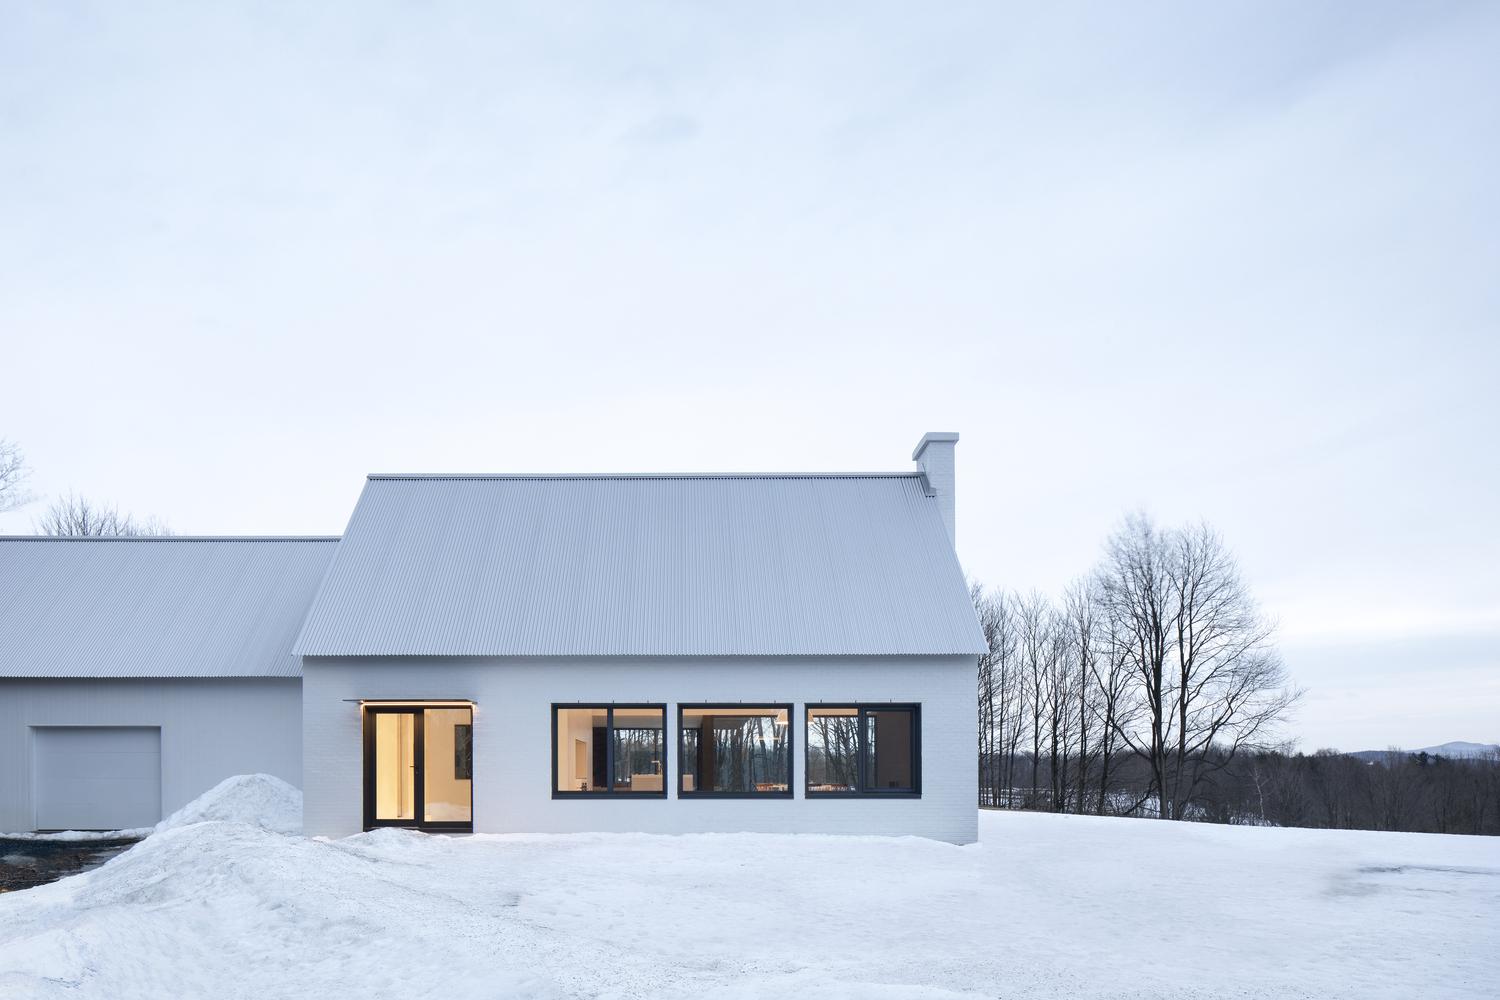 溫暖舒適白色木系家居 糅合現代建築主義與鄉村農舍元素